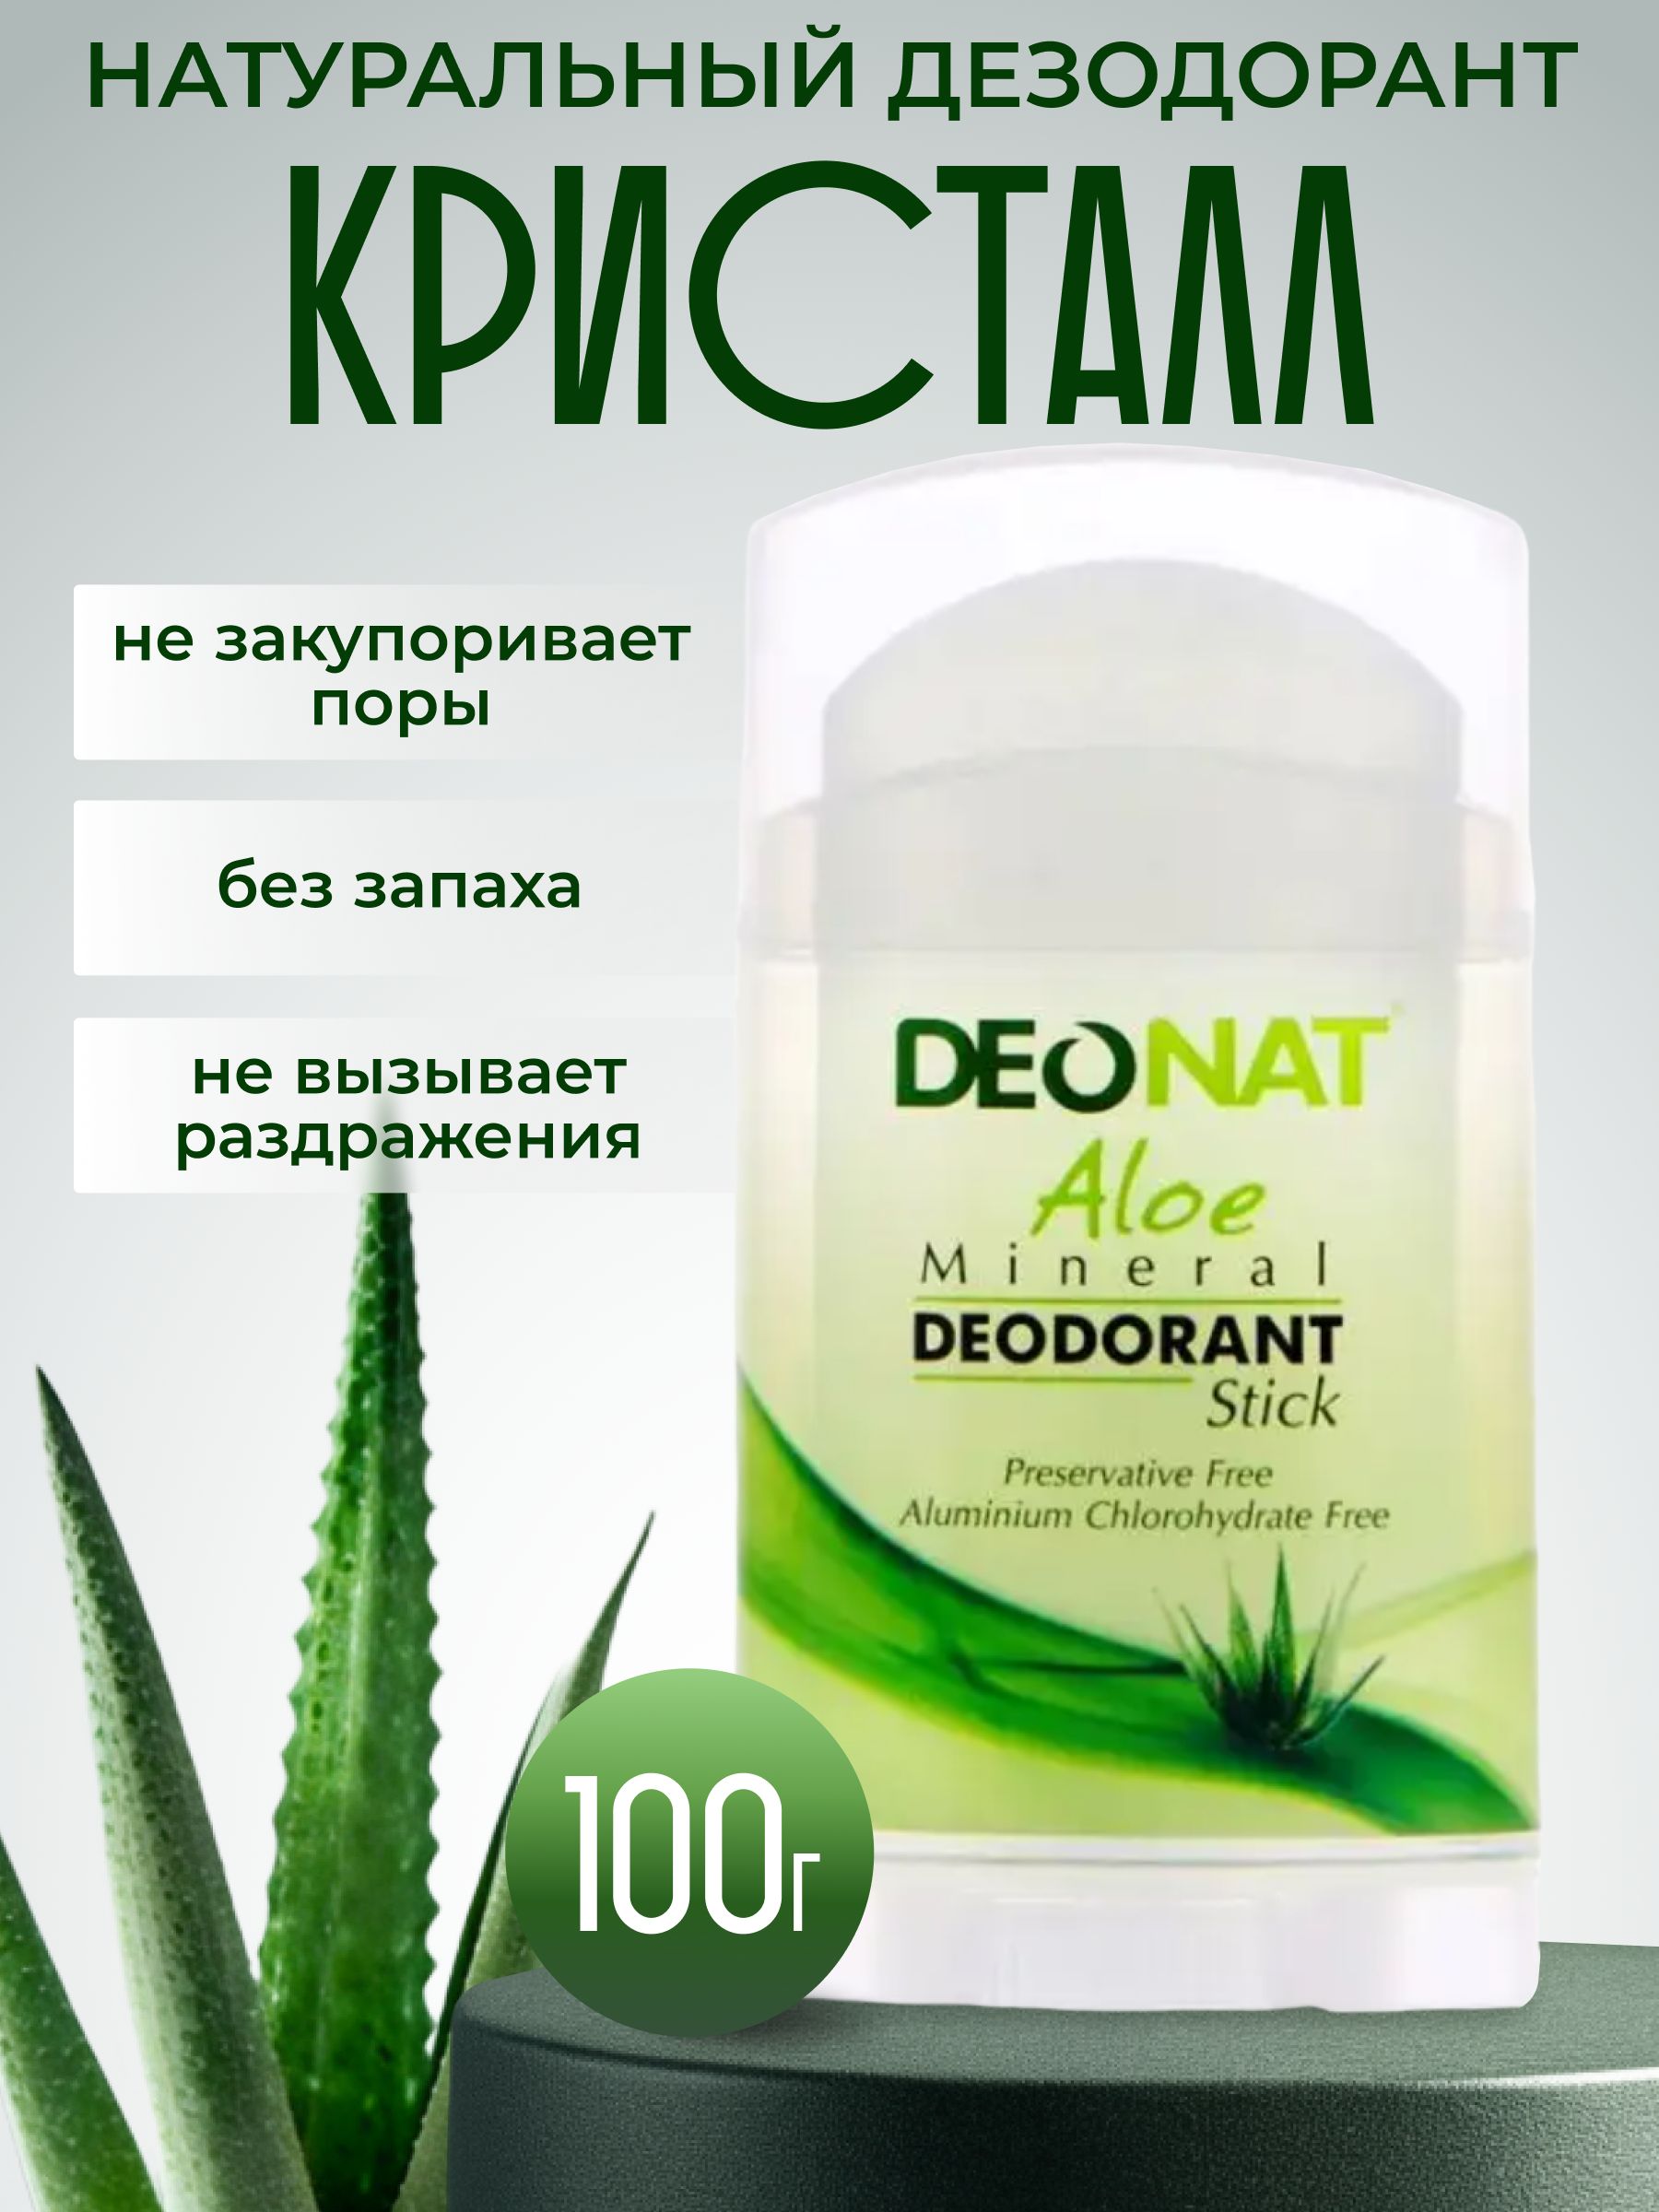 DeoNat-100%НатуральныйминеральныйдезодоранткристаллссокомалоэмужскойженскийбеззапахаДеоНат100г